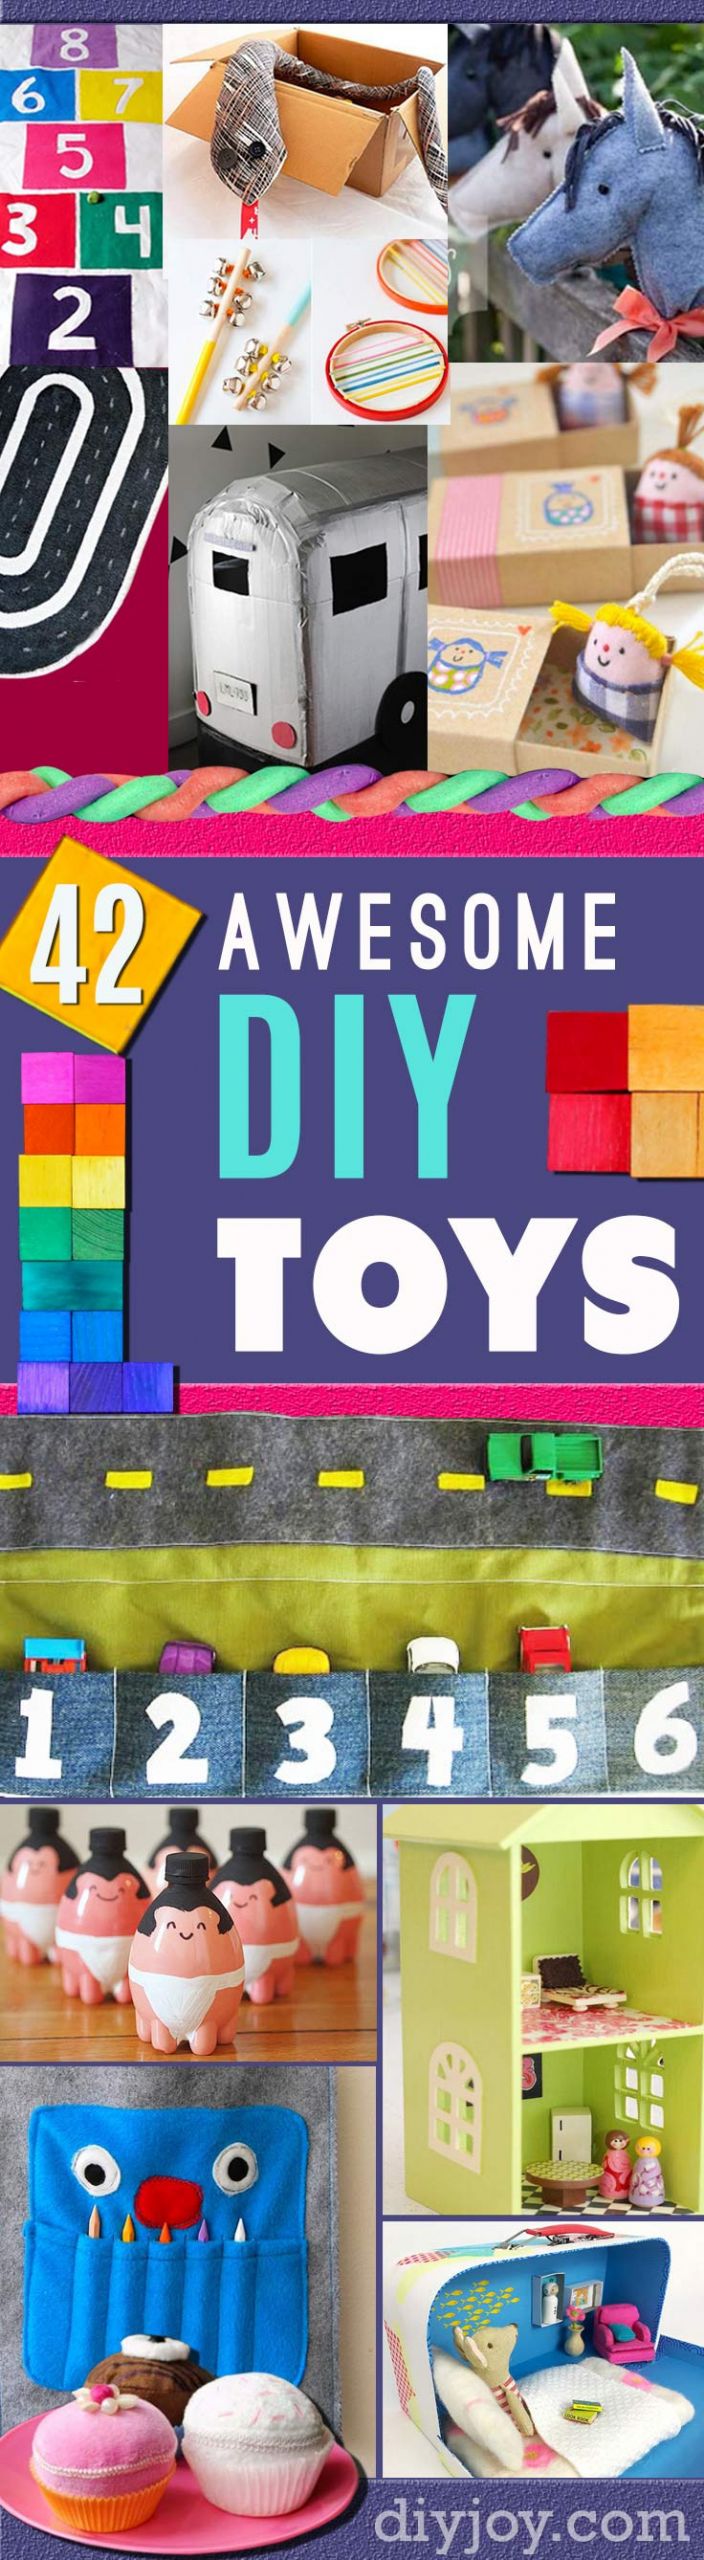 DIY Christmas Gift For Kids
 41 DIY Gifts to Make For Kids Think Homemade Christmas